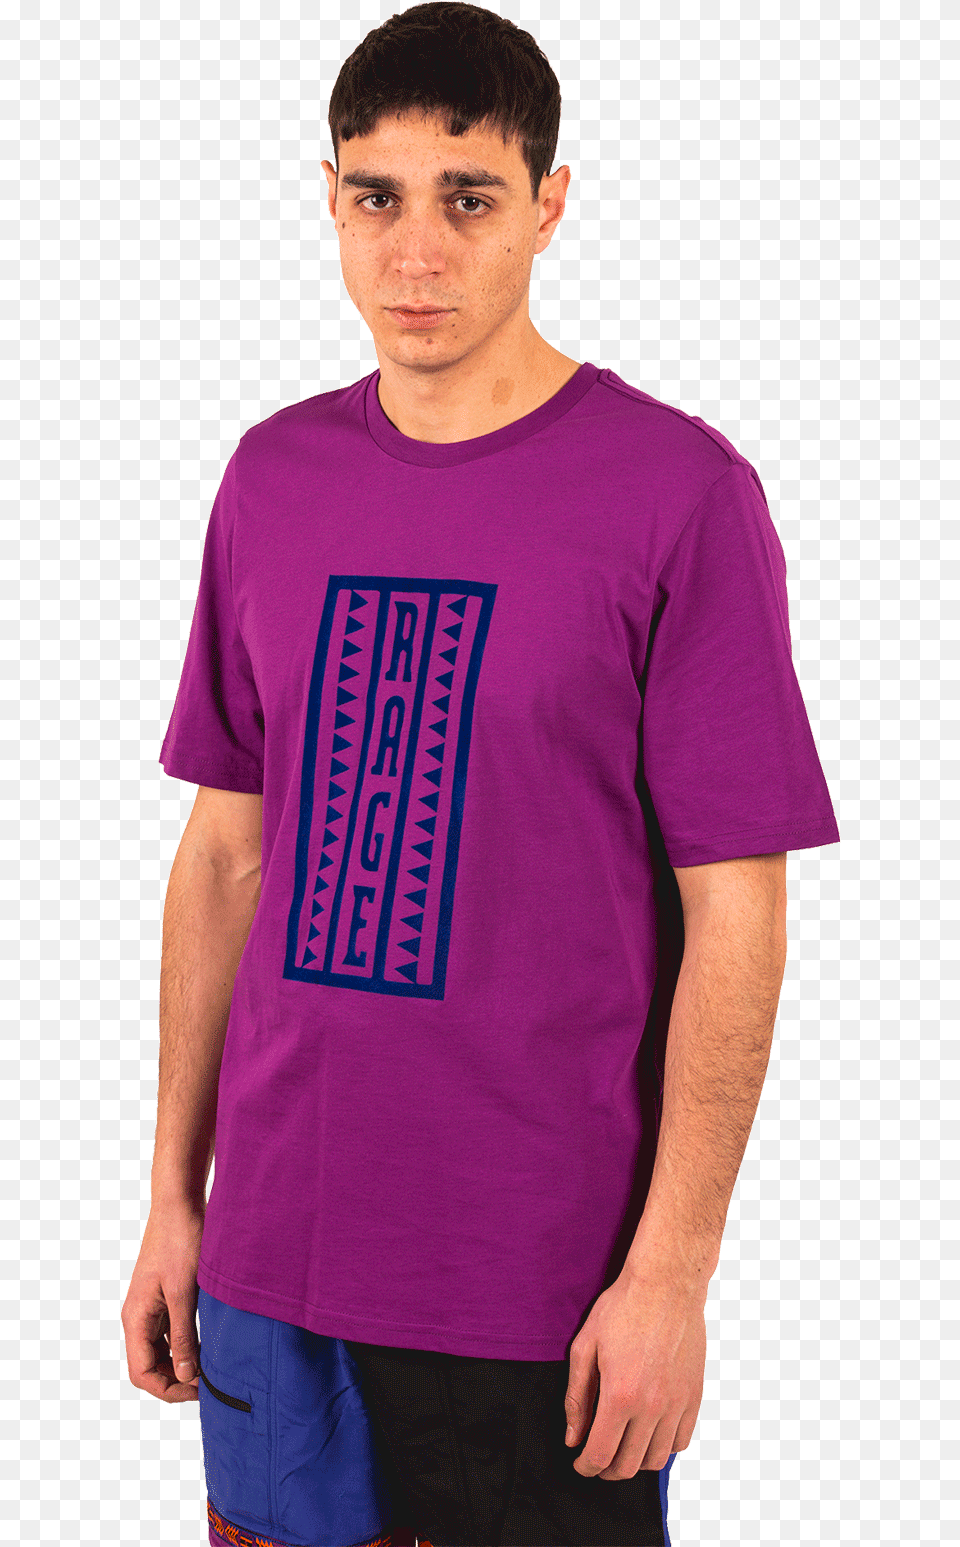 Active Shirt, T-shirt, Clothing, Person, Man Png Image